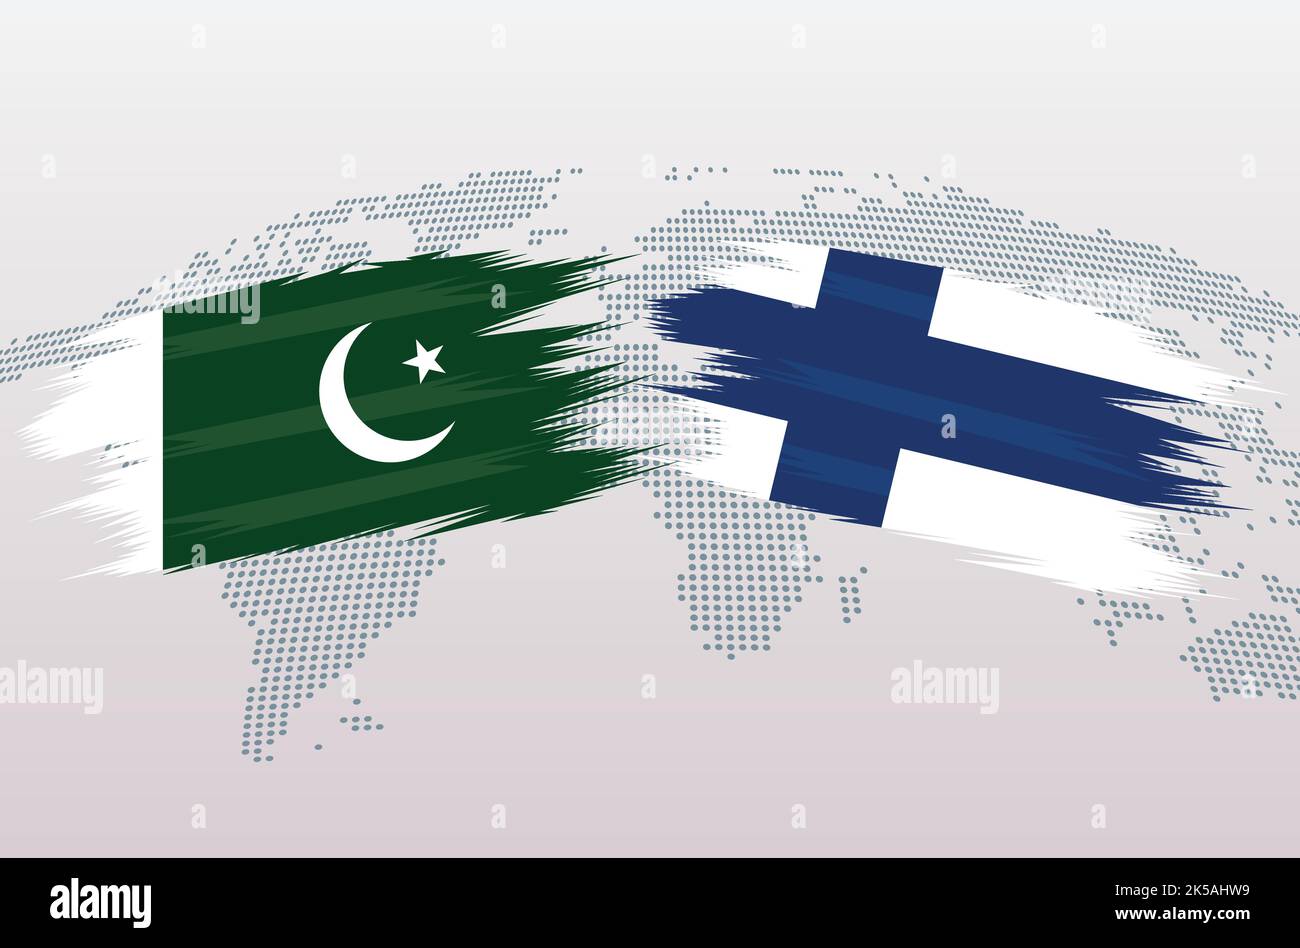 Bandiere Pakistan vs Finlandia. Bandiera della Repubblica islamica del Pakistan e bandiera della Finlandia, isolata su sfondo grigio della mappa mondiale. Illustrazione vettoriale. Illustrazione Vettoriale